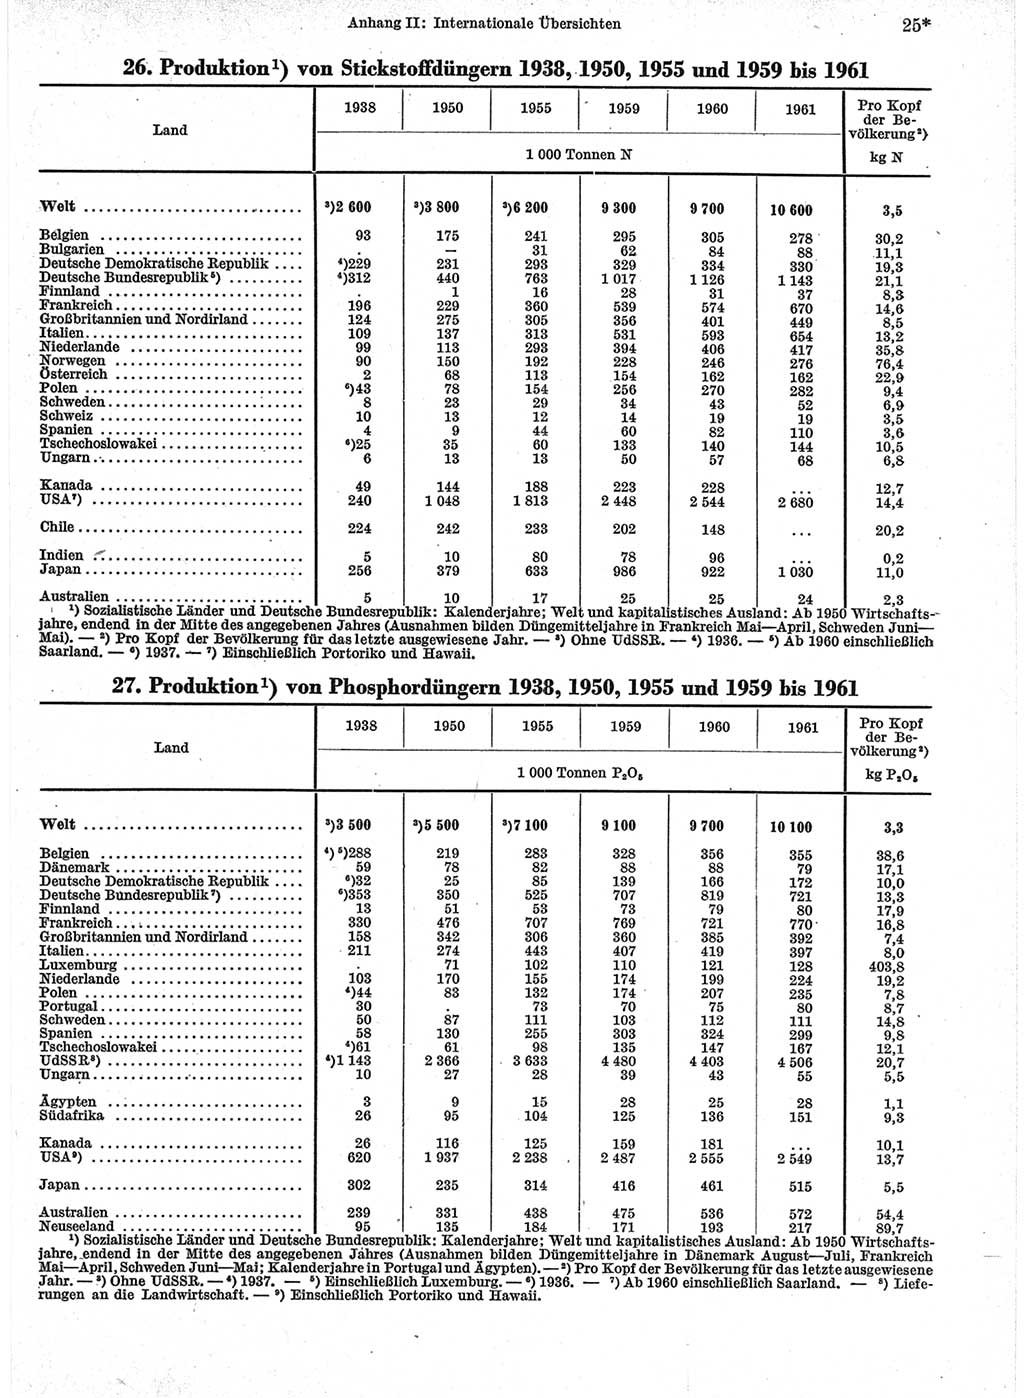 Statistisches Jahrbuch der Deutschen Demokratischen Republik (DDR) 1963, Seite 25 (Stat. Jb. DDR 1963, S. 25)